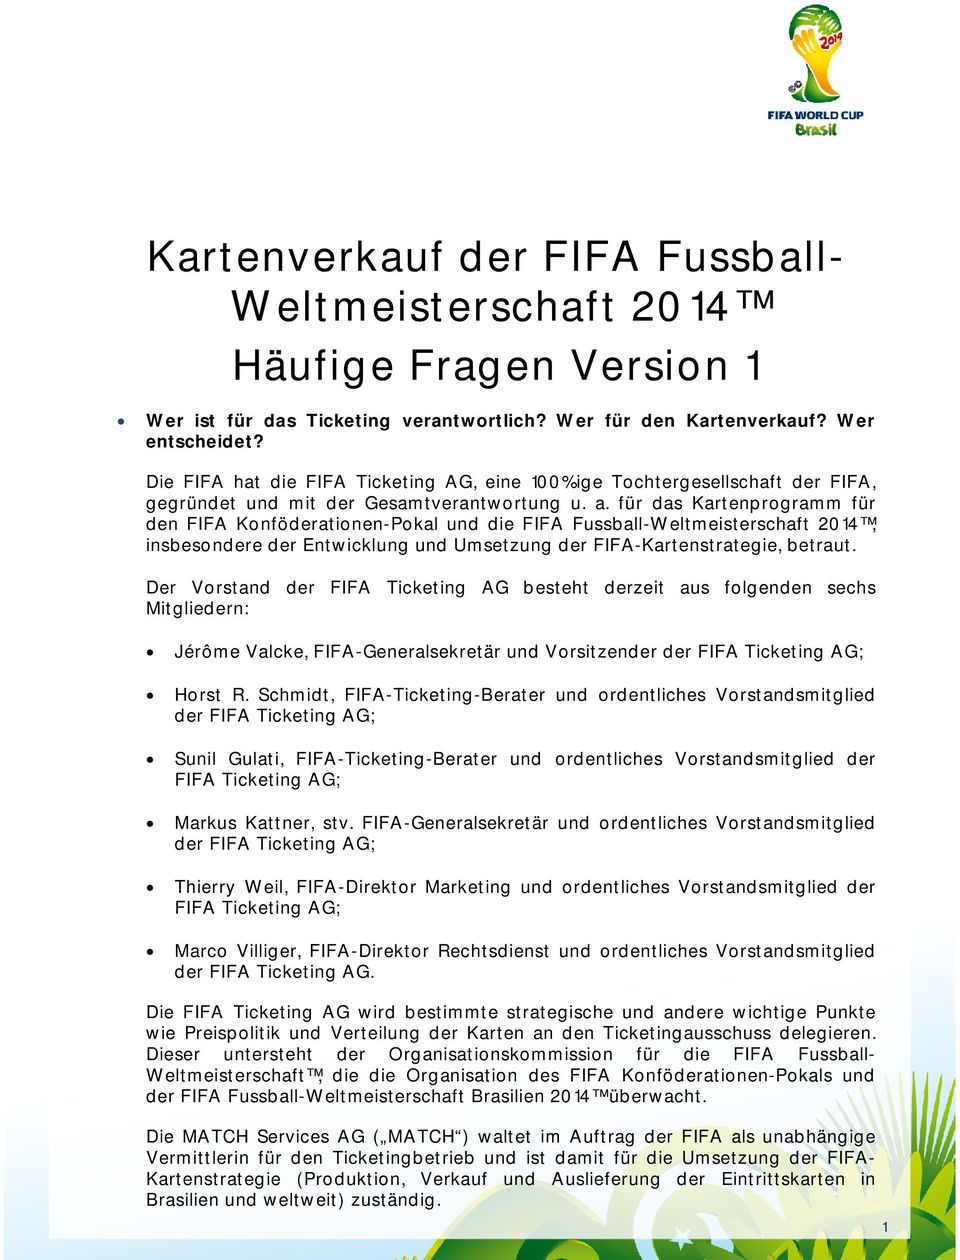 für das Kartenprogramm für den FIFA Konföderationen-Pokal und die FIFA Fussball-Weltmeisterschaft 2014, insbesondere der Entwicklung und Umsetzung der FIFA-Kartenstrategie, betraut.